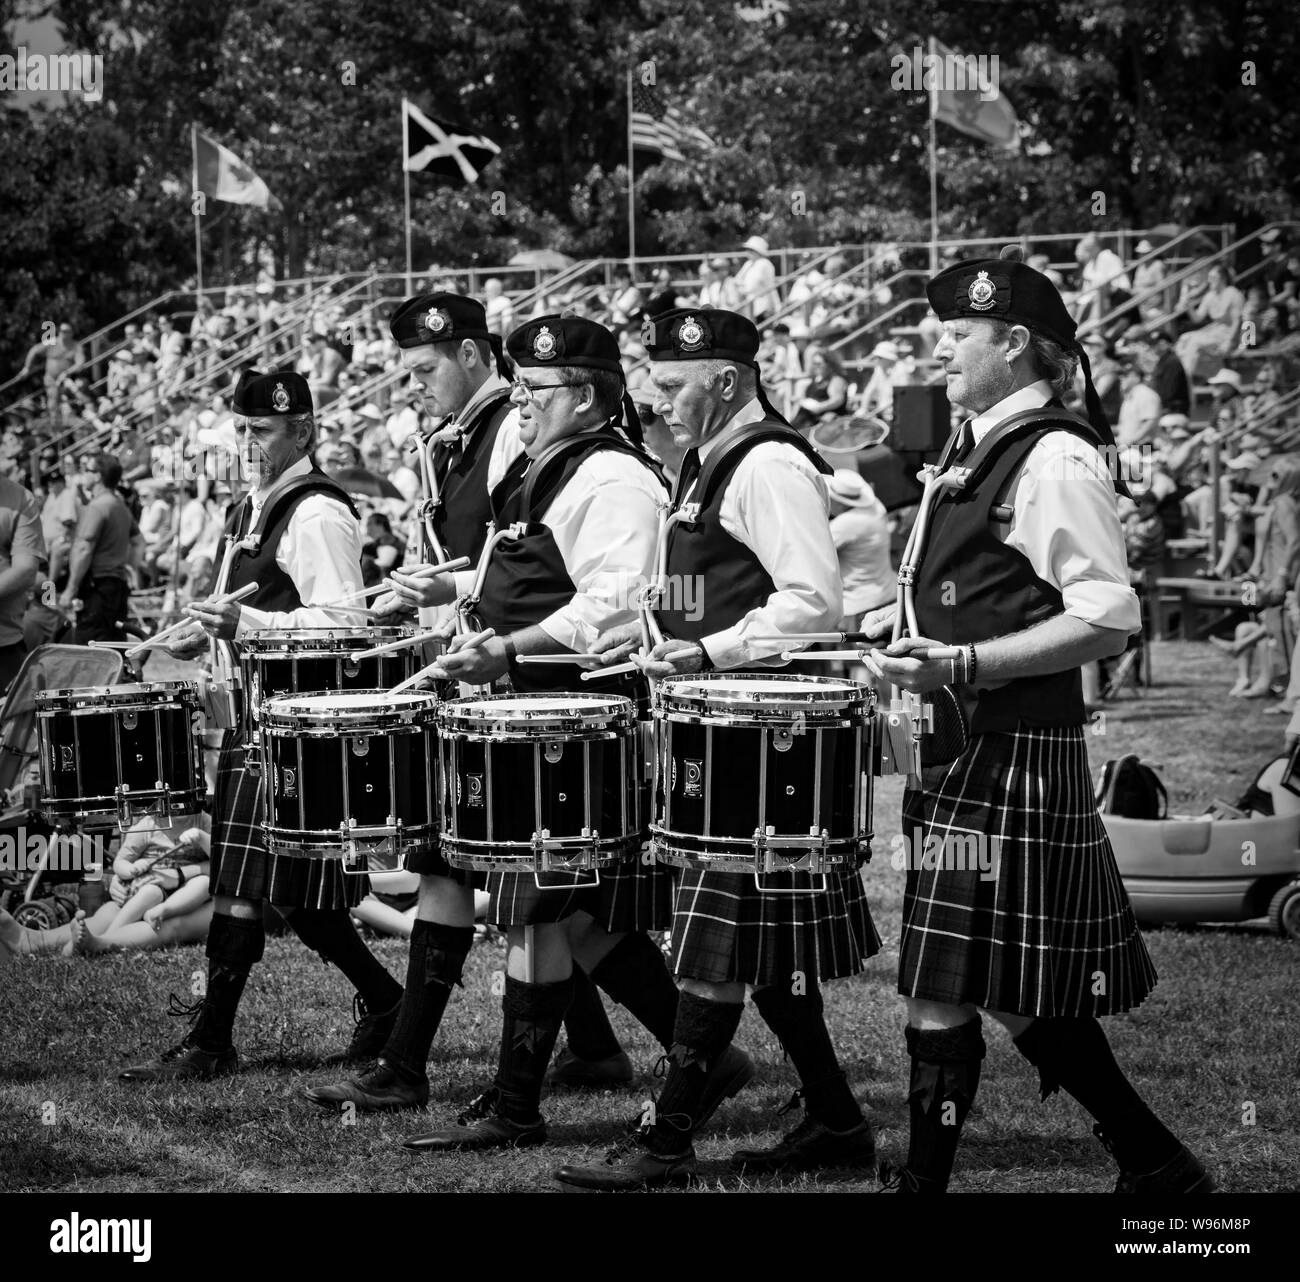 Fergus, Ontario, Kanada - 08 11 2018: Drummer der Durham regionale Polizei Rohre und Trommeln Band die Teilnahme an der Pipe Band Contest statt von Piper Stockfoto